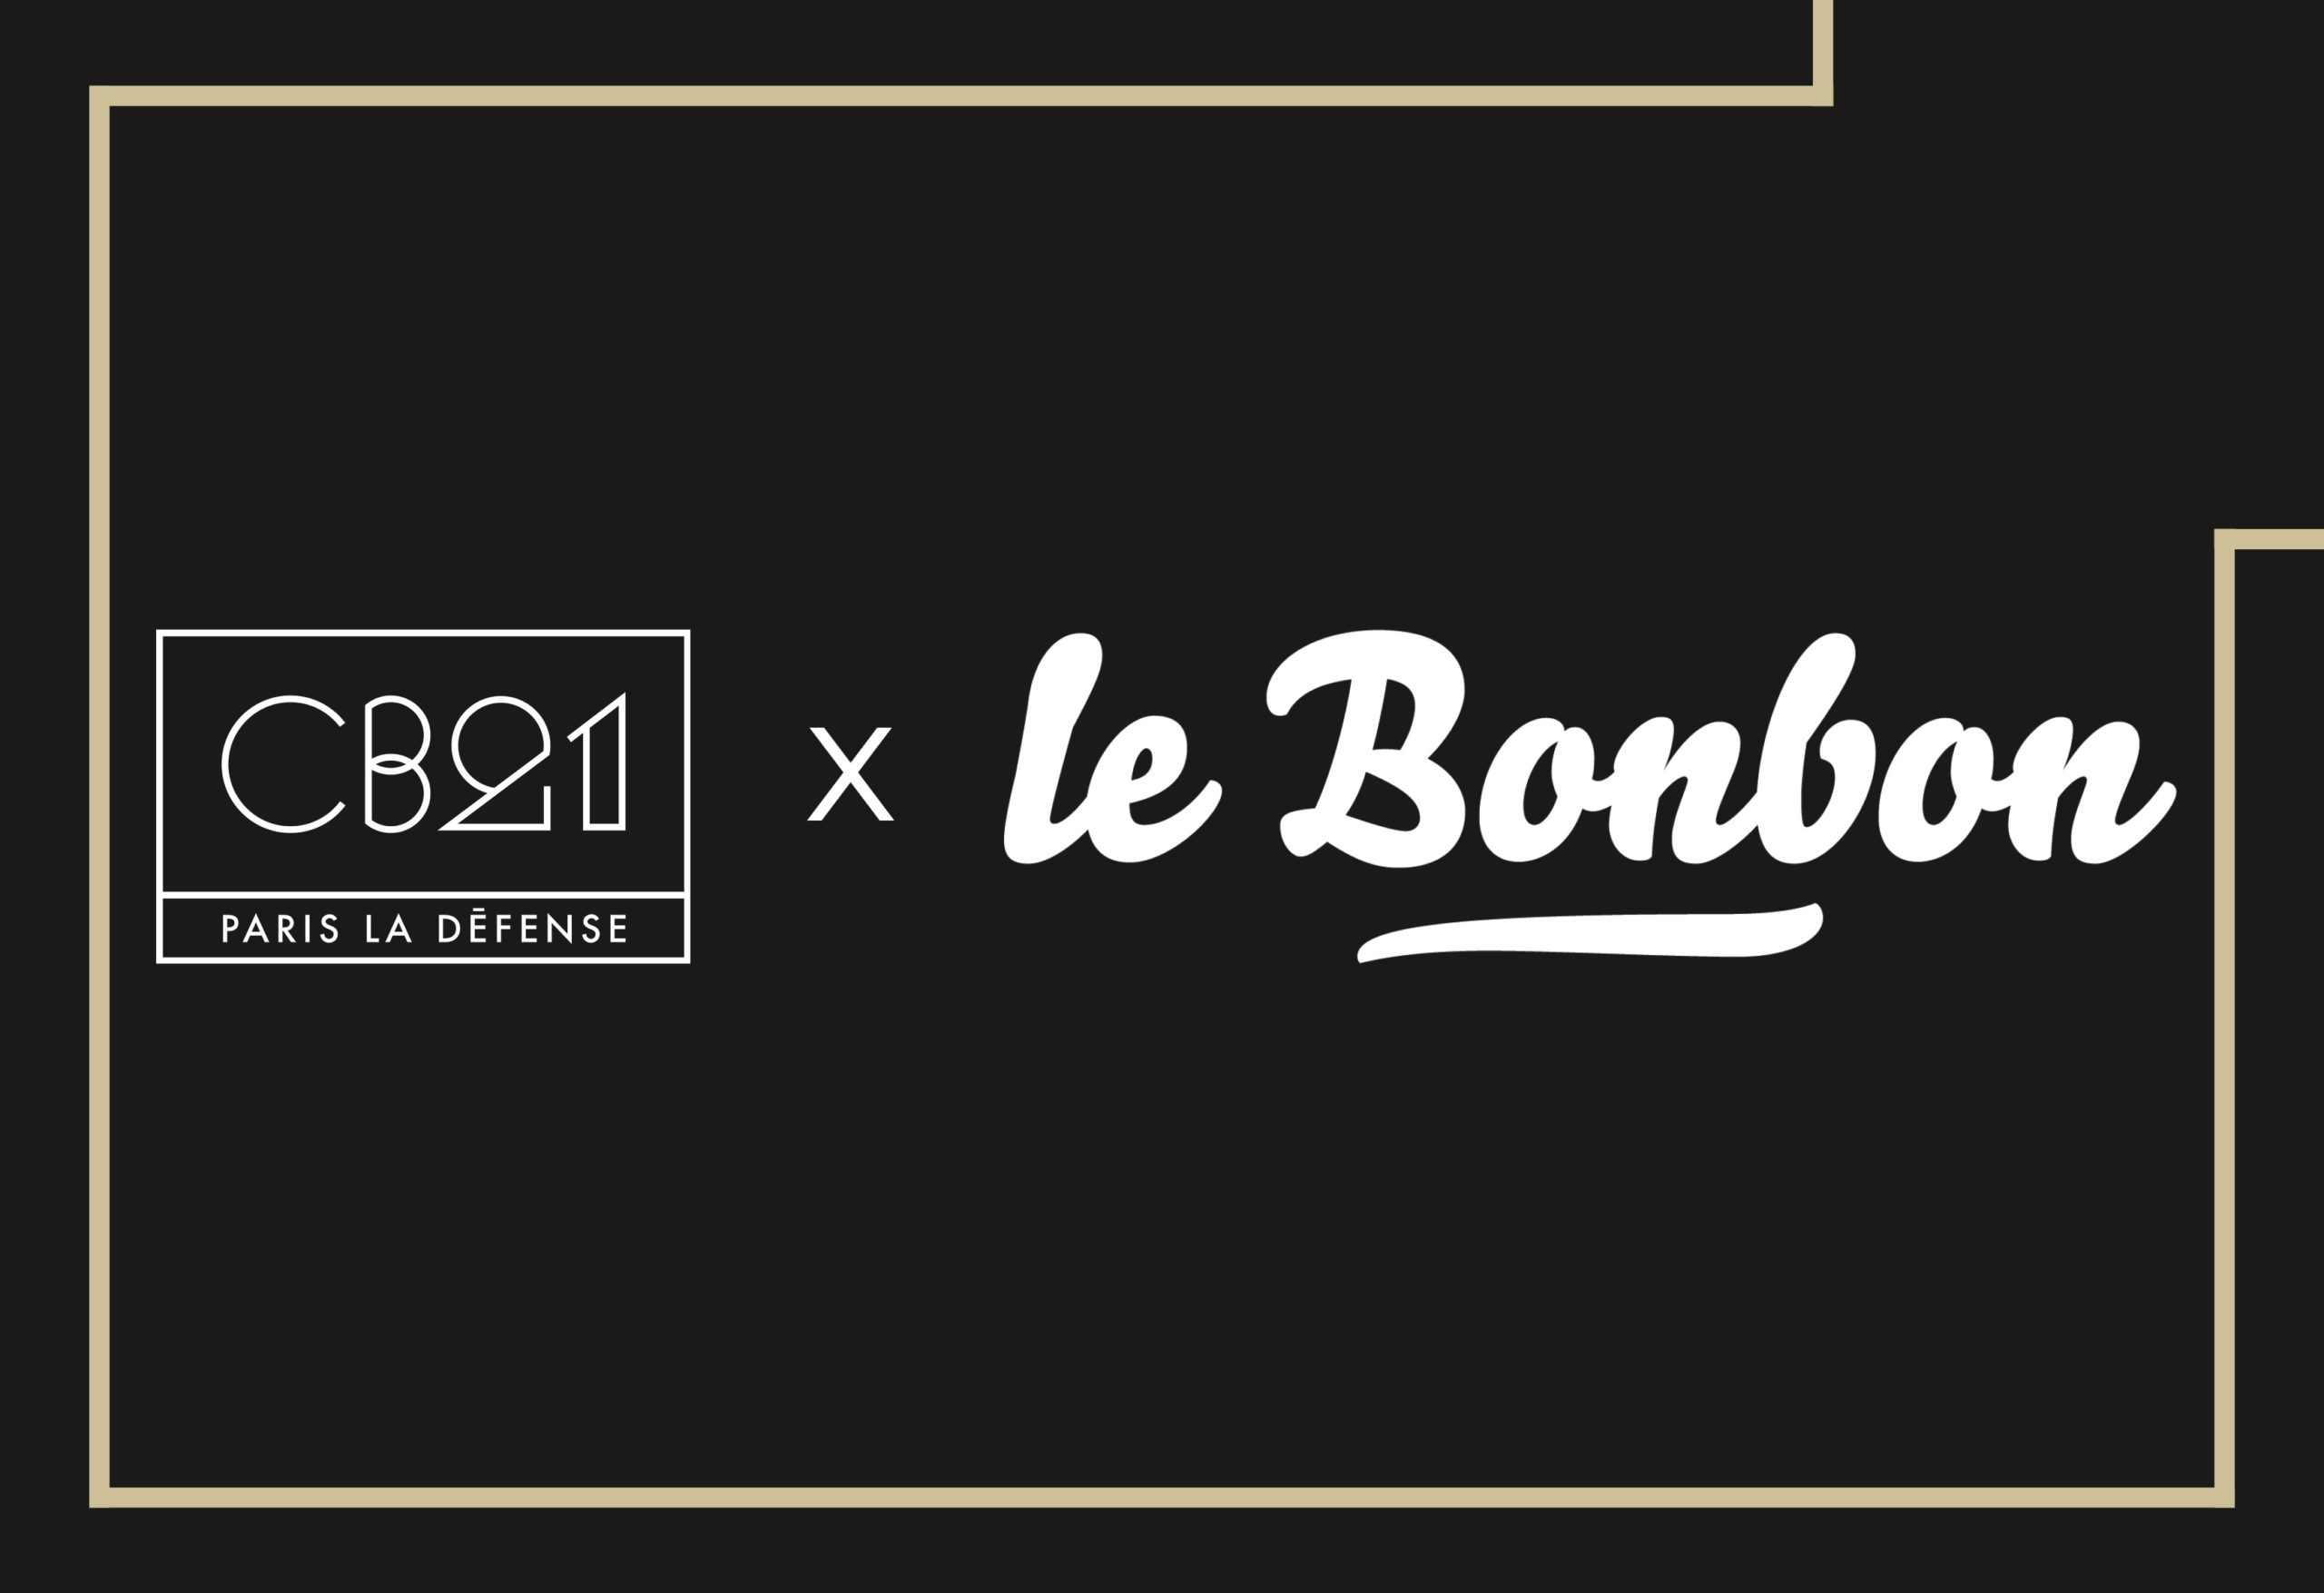 Le_Bonbon-CB21_Tour_Paris_La_Defense